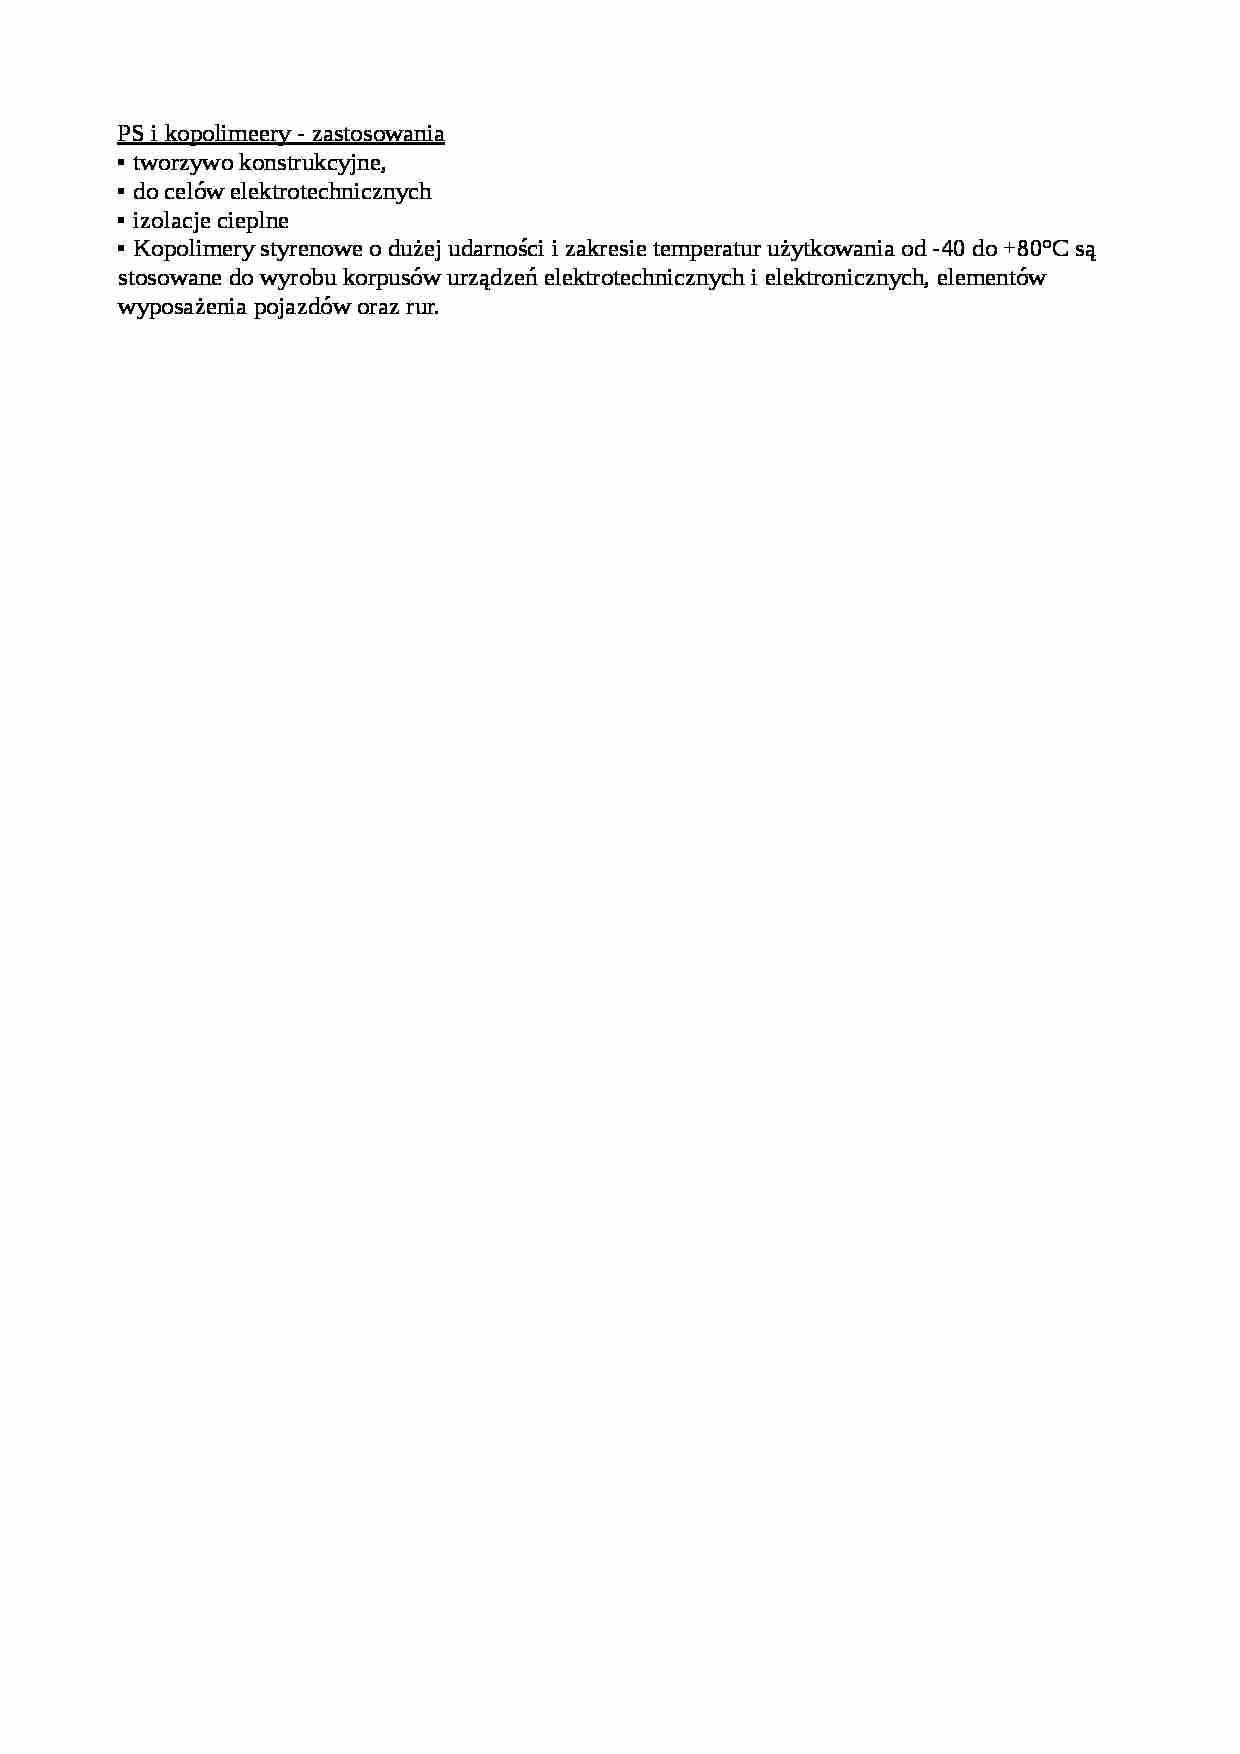 PS i kopolimeery - zastosowania - strona 1